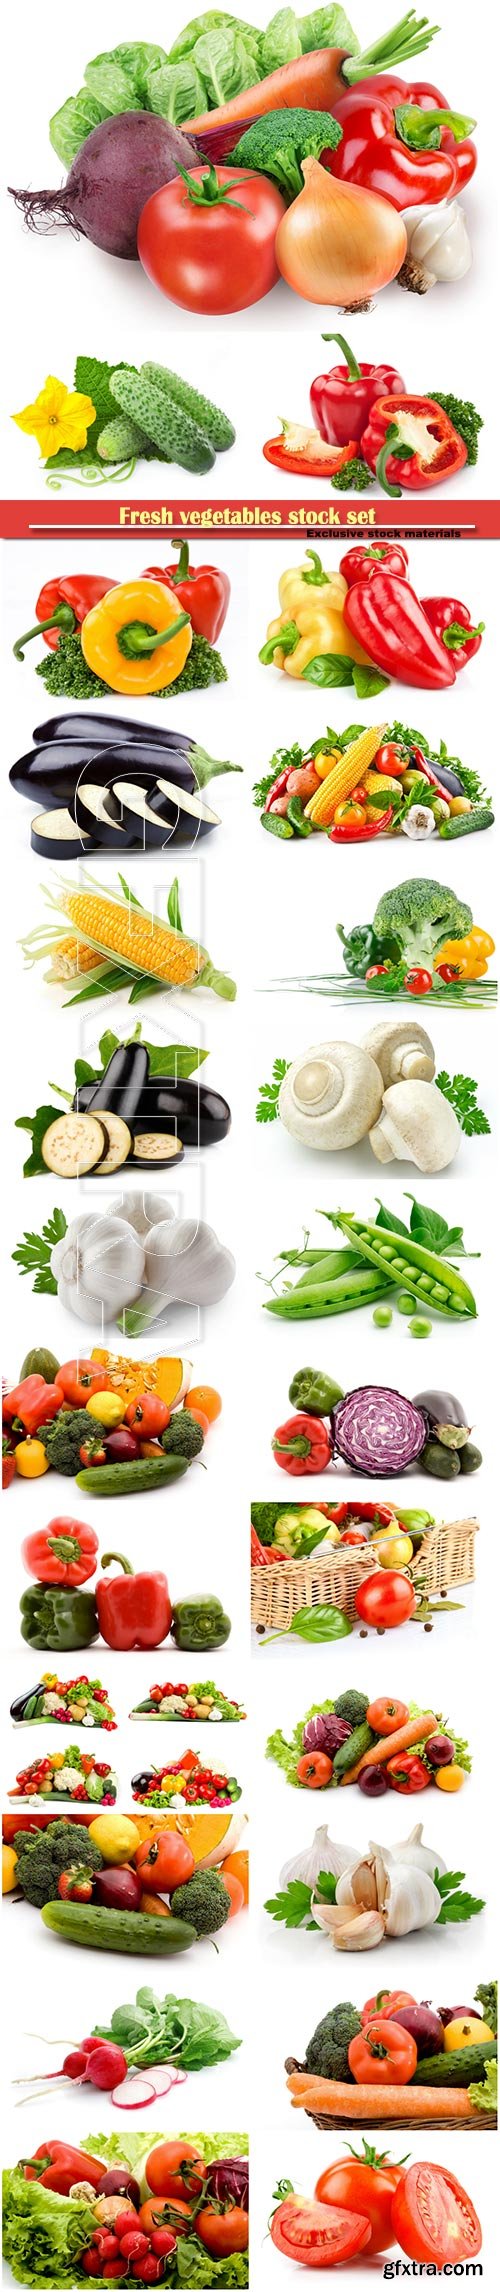 Fresh vegetables stock set